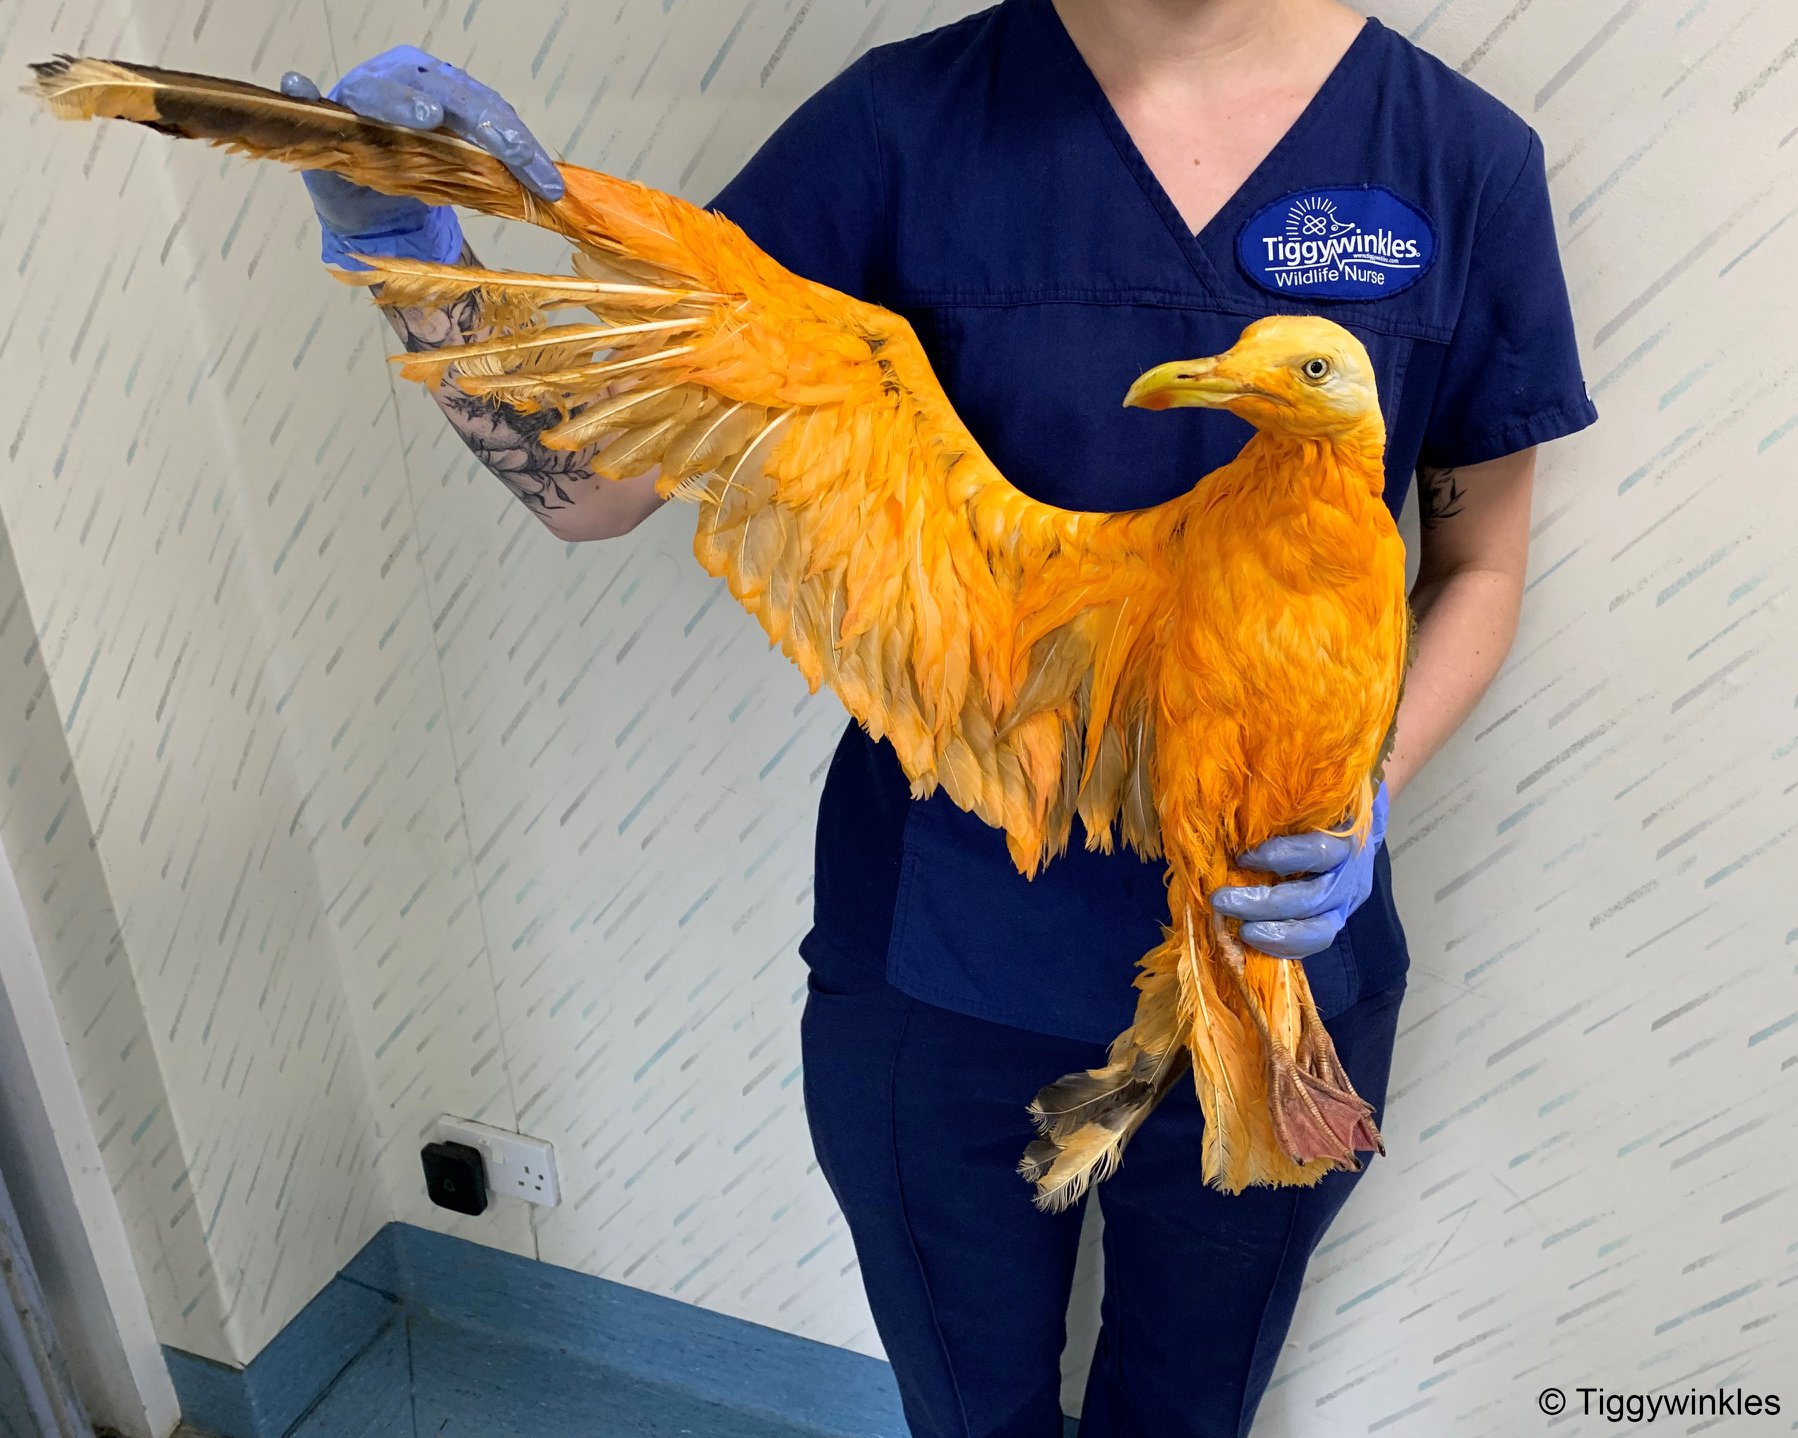 Egzotikus madárnak hitték az állatorvosok, de kiderült, hogy csak currybe esett sirályról van szó